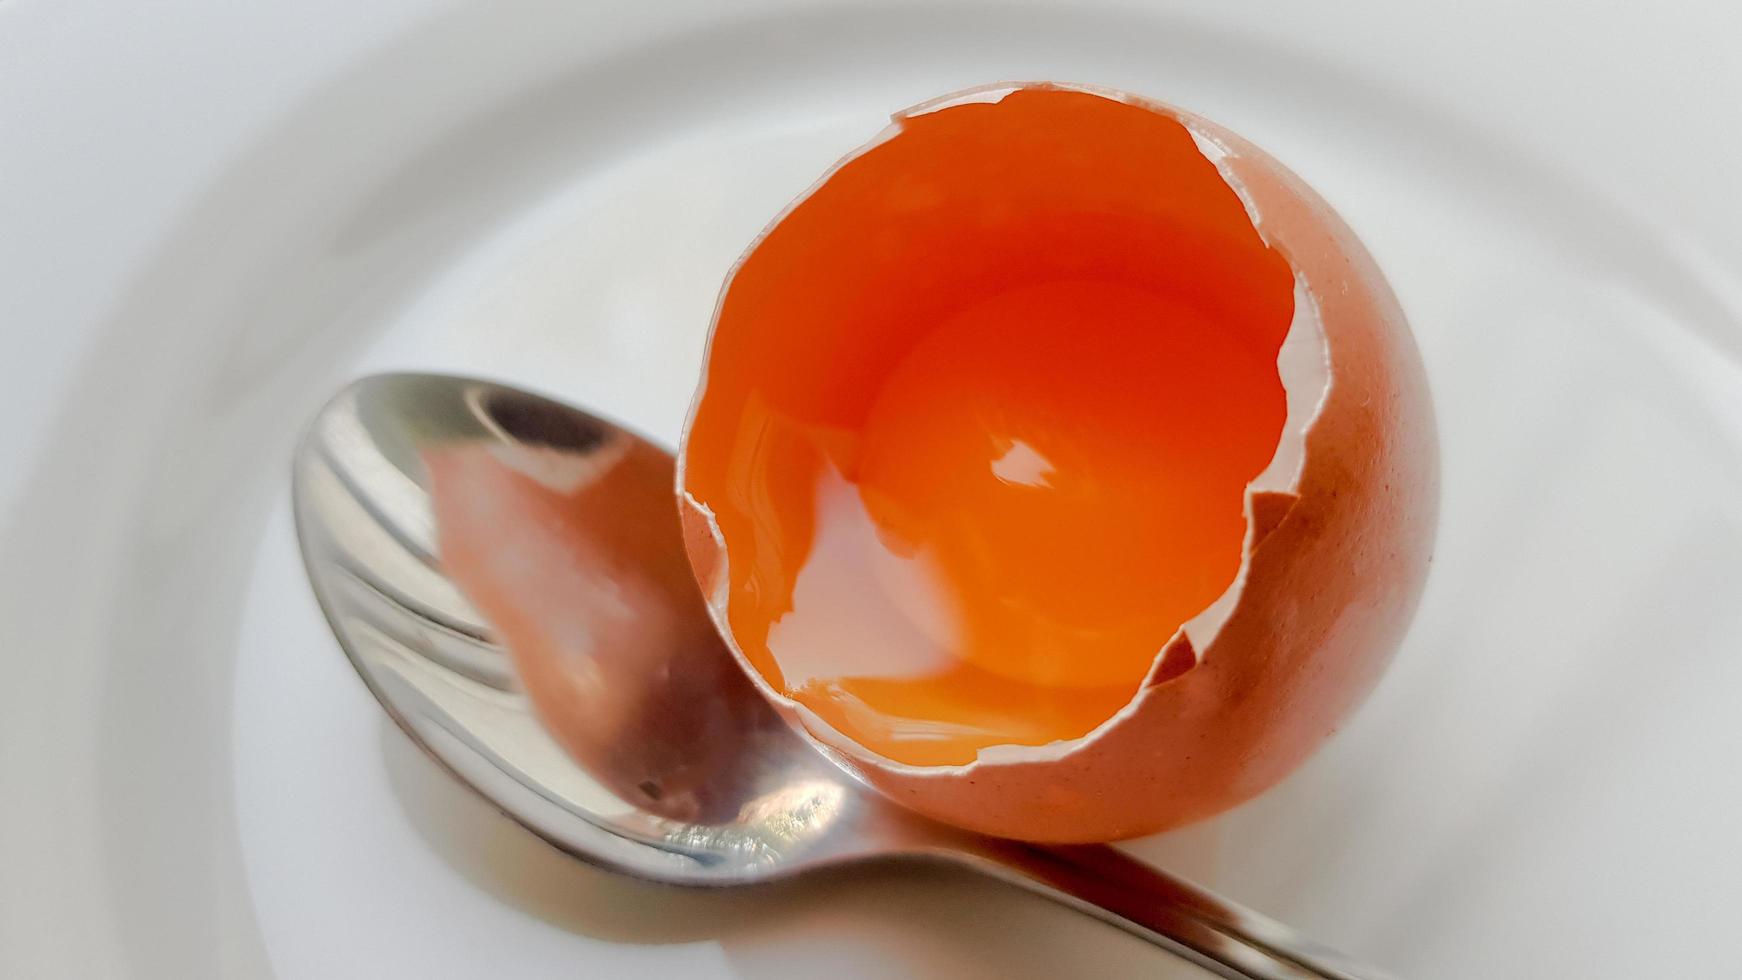 uovo di gallina rotto in un piatto bianco e un cucchiaio di close-up. sfondo con un uovo di gallina rotto foto